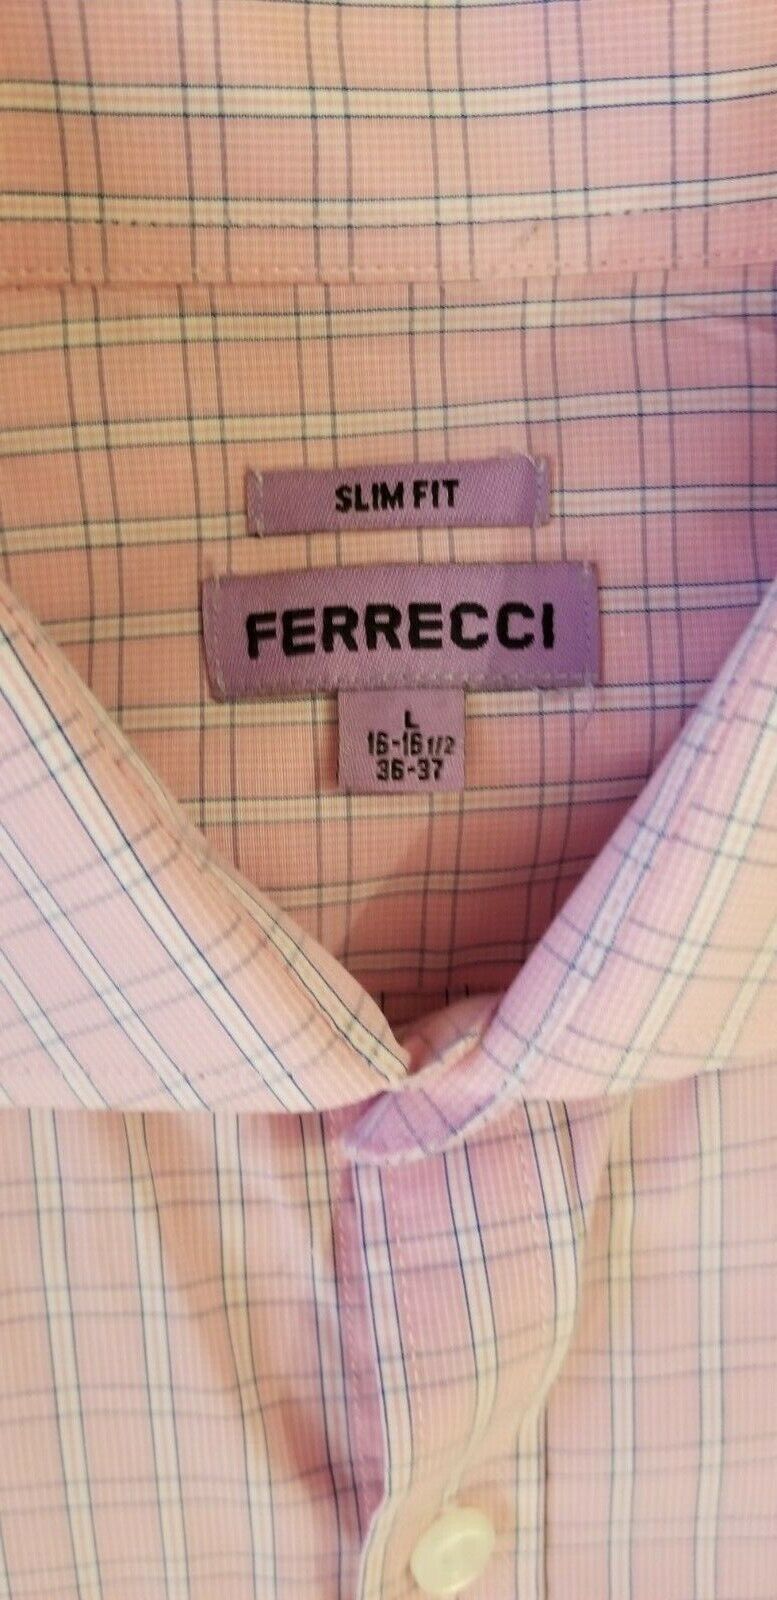 Ferrecci Slim Fit Long Sleeve Shirt Size Large 16… - image 2